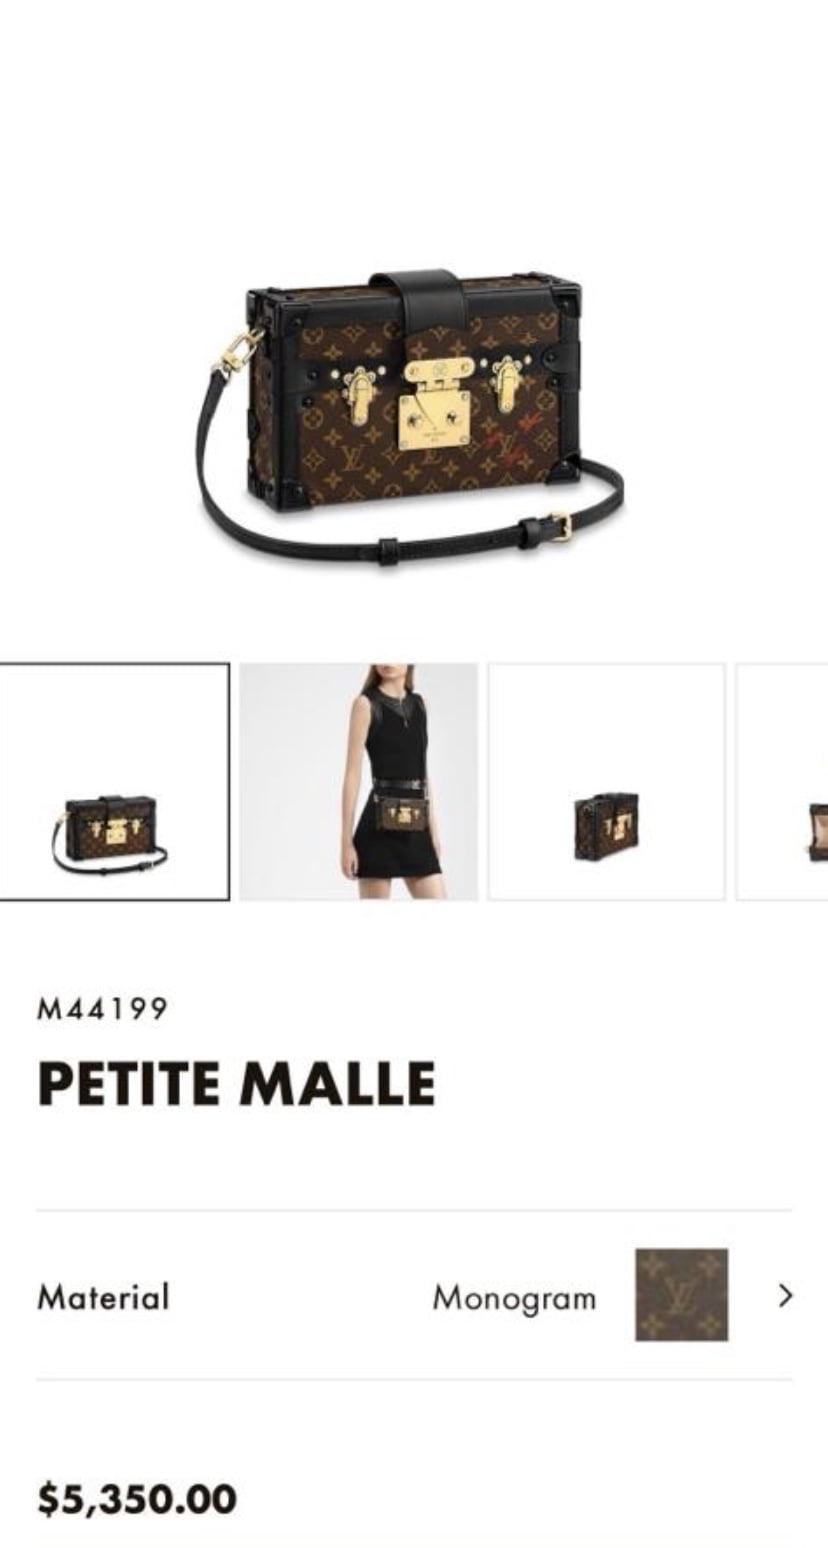 Louis Vuitton Petite Malle 2020 Price